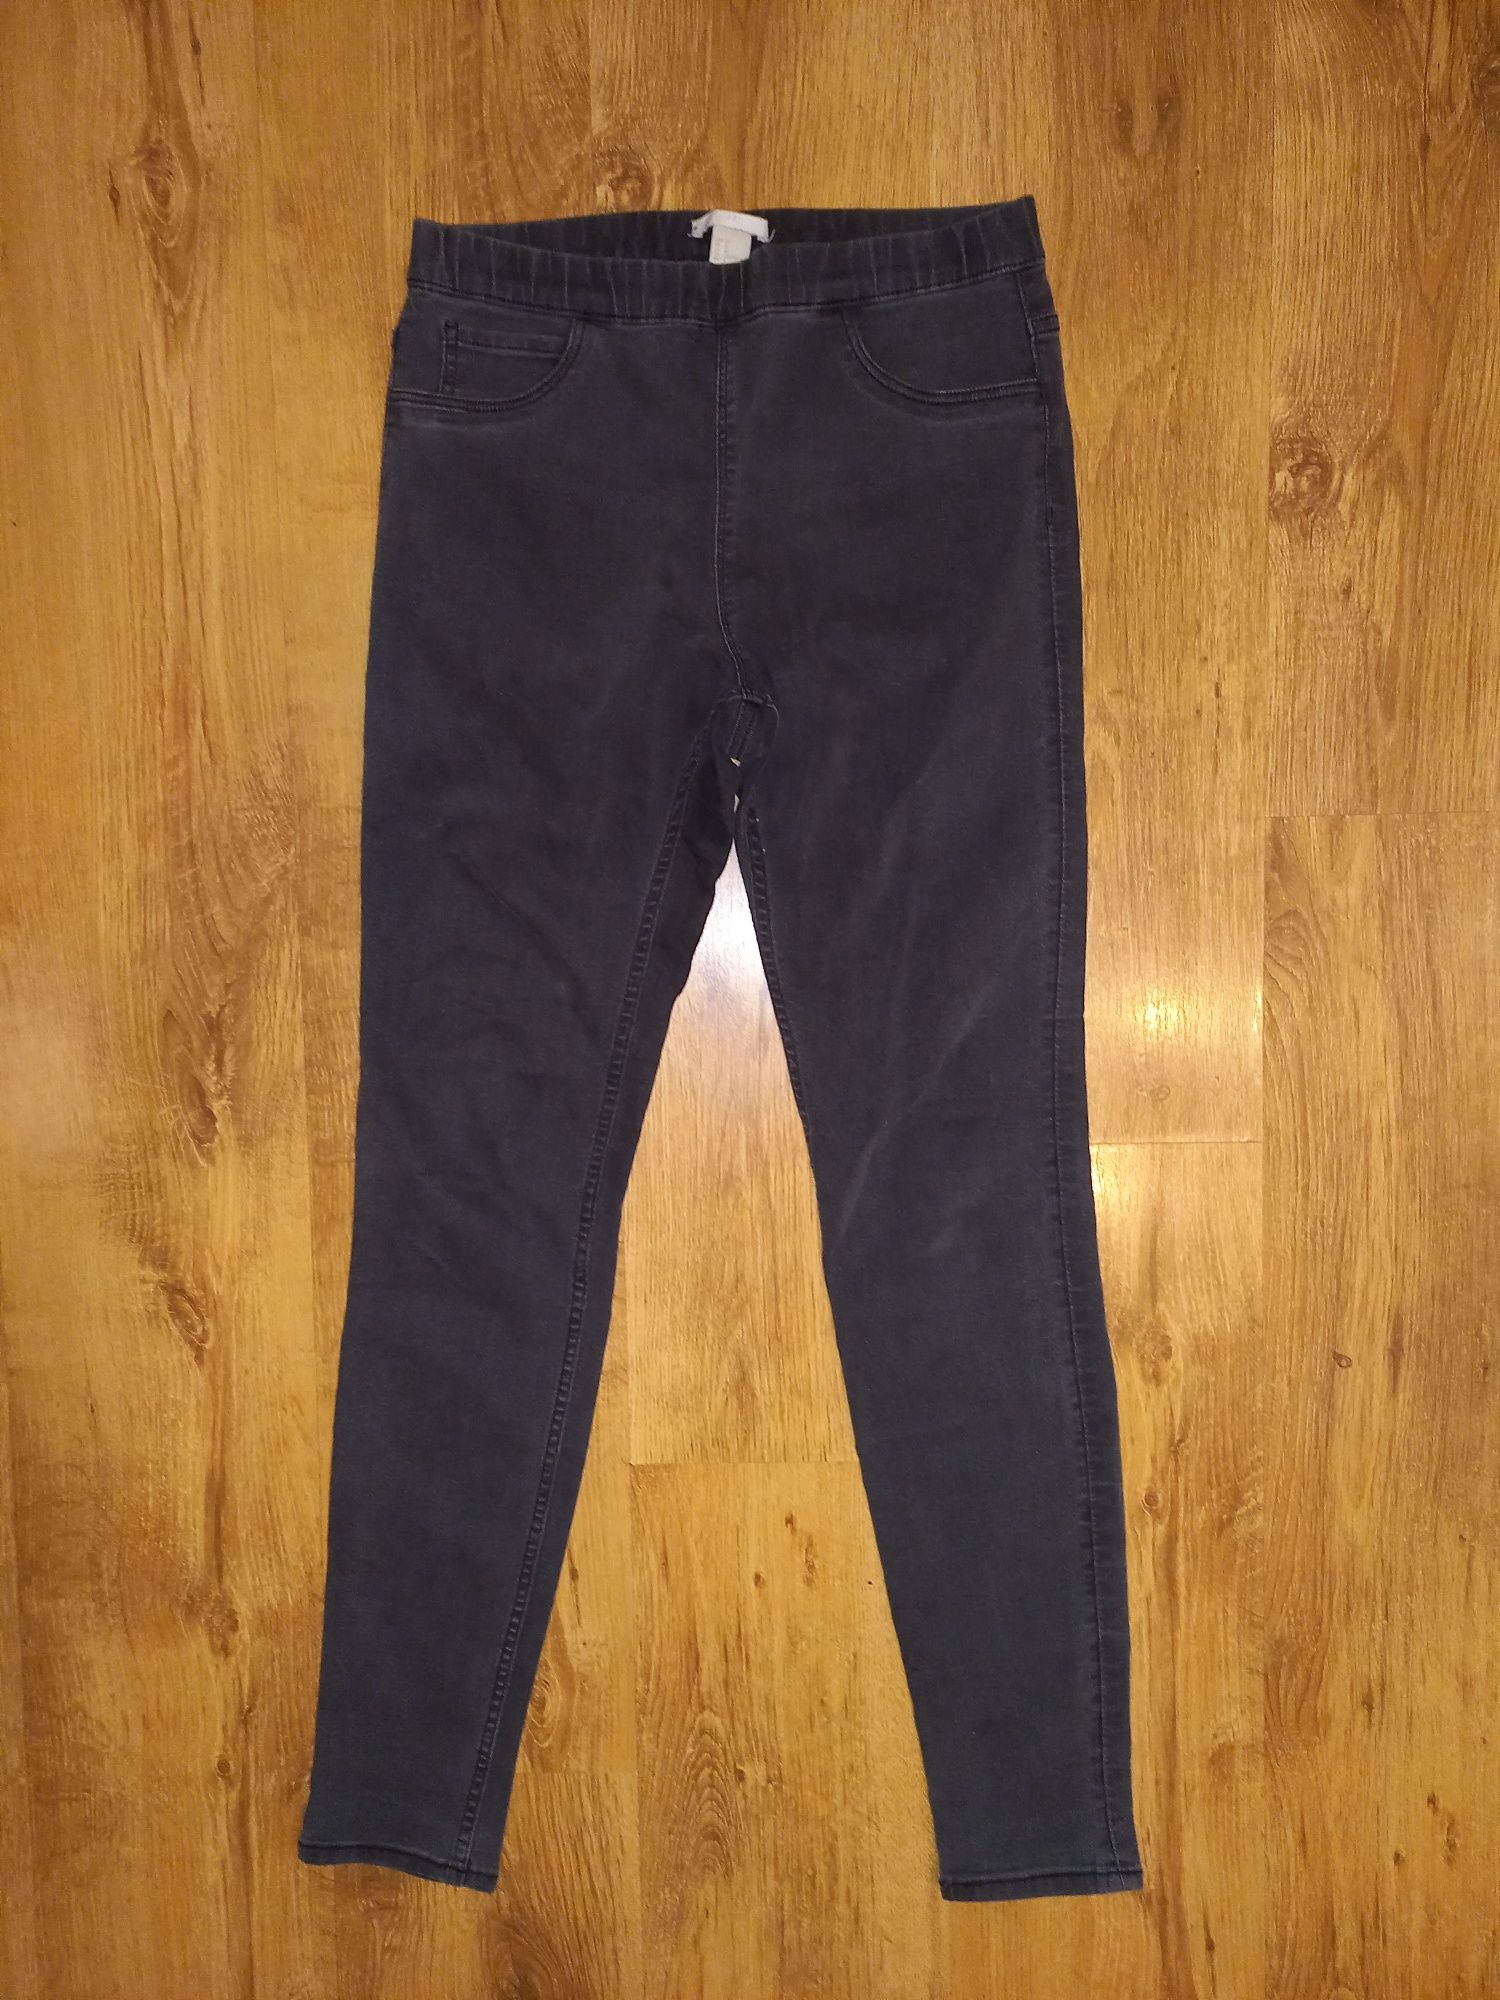 Dwupak dwóch czarnych spodni (jegginsów) damskich | r. 38 (M) | H&M